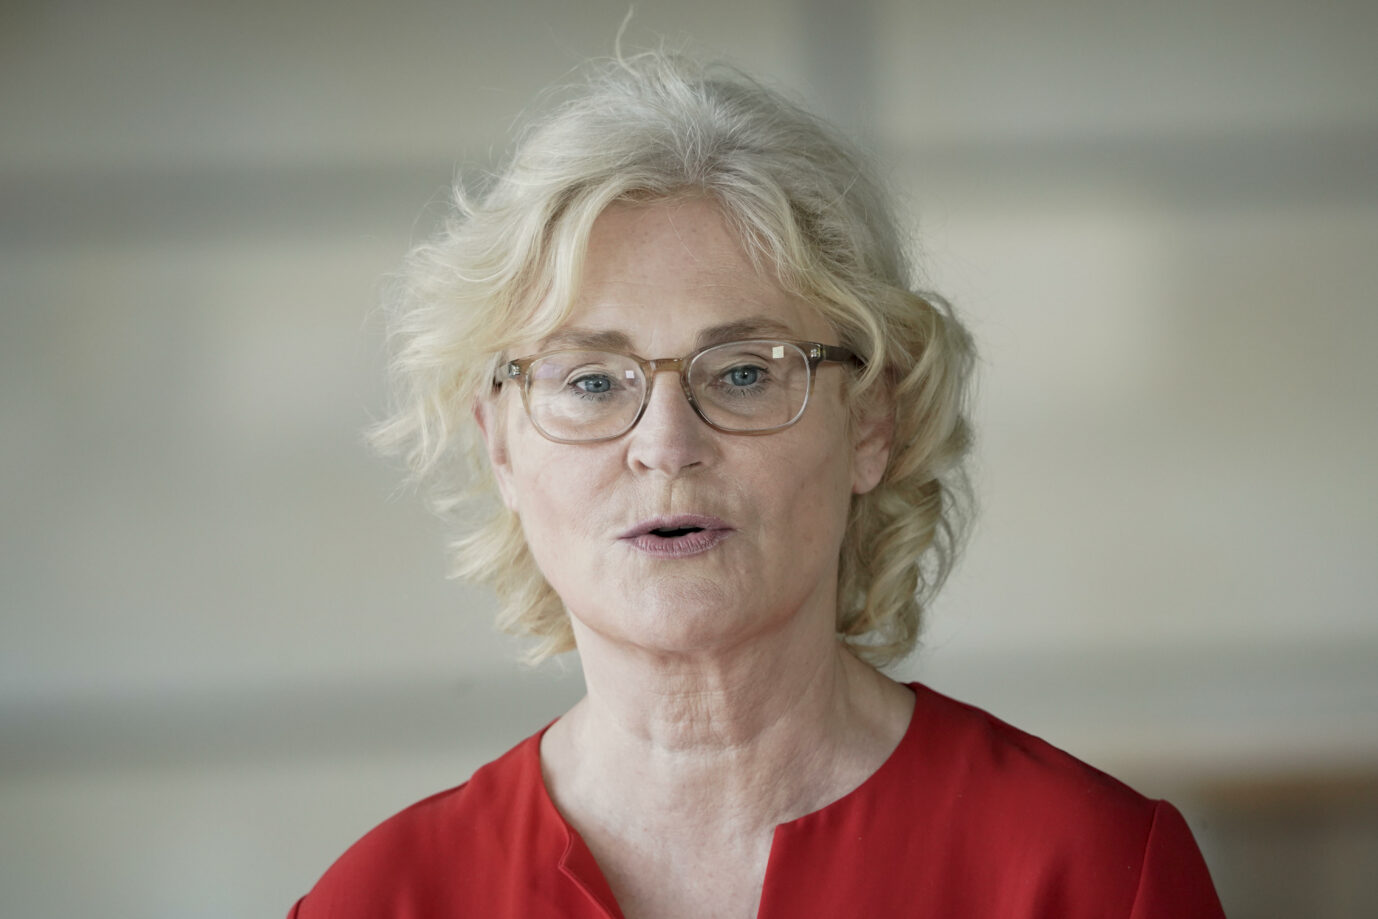 Bundesjustizministerin Christine Lambrecht (SPD) lehnt eine Corona-Impfpflicht ab Foto: picture alliance / Flashpic | Jens Krick